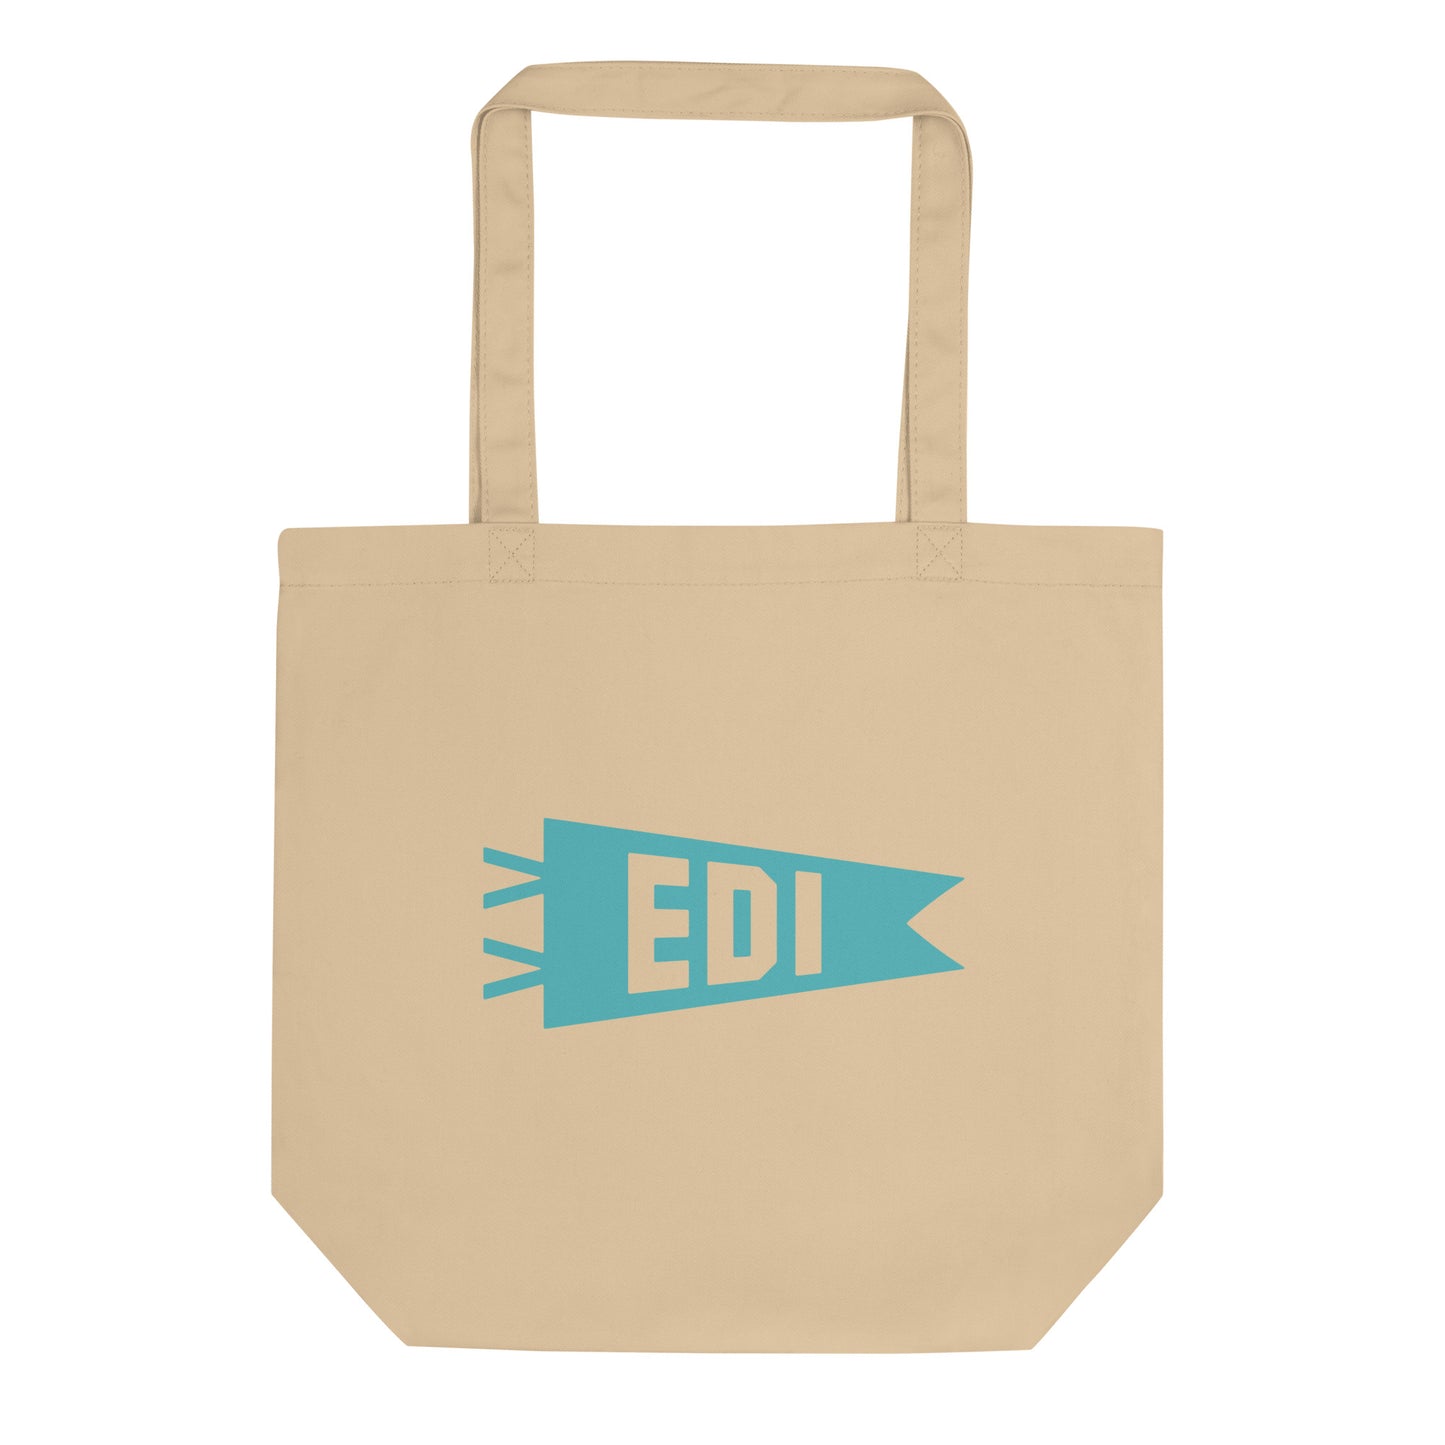 Cool Travel Gift Organic Tote Bag - Viking Blue • EDI Edinburgh • YHM Designs - Image 01